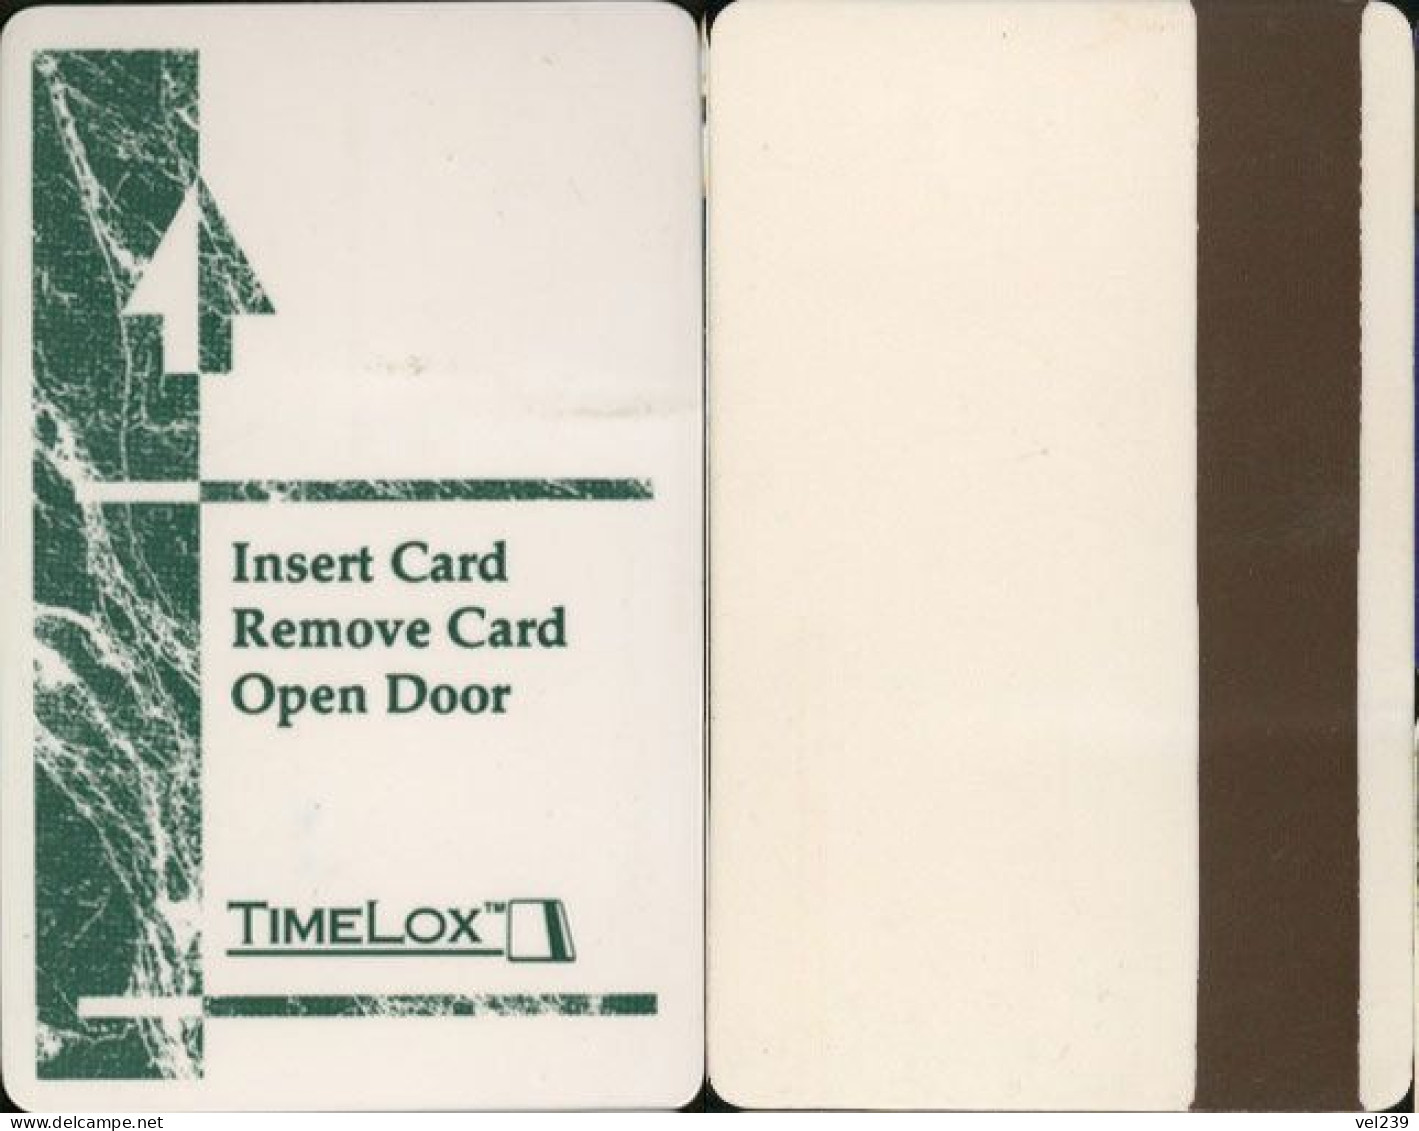 TimeLox - Hotel Keycards